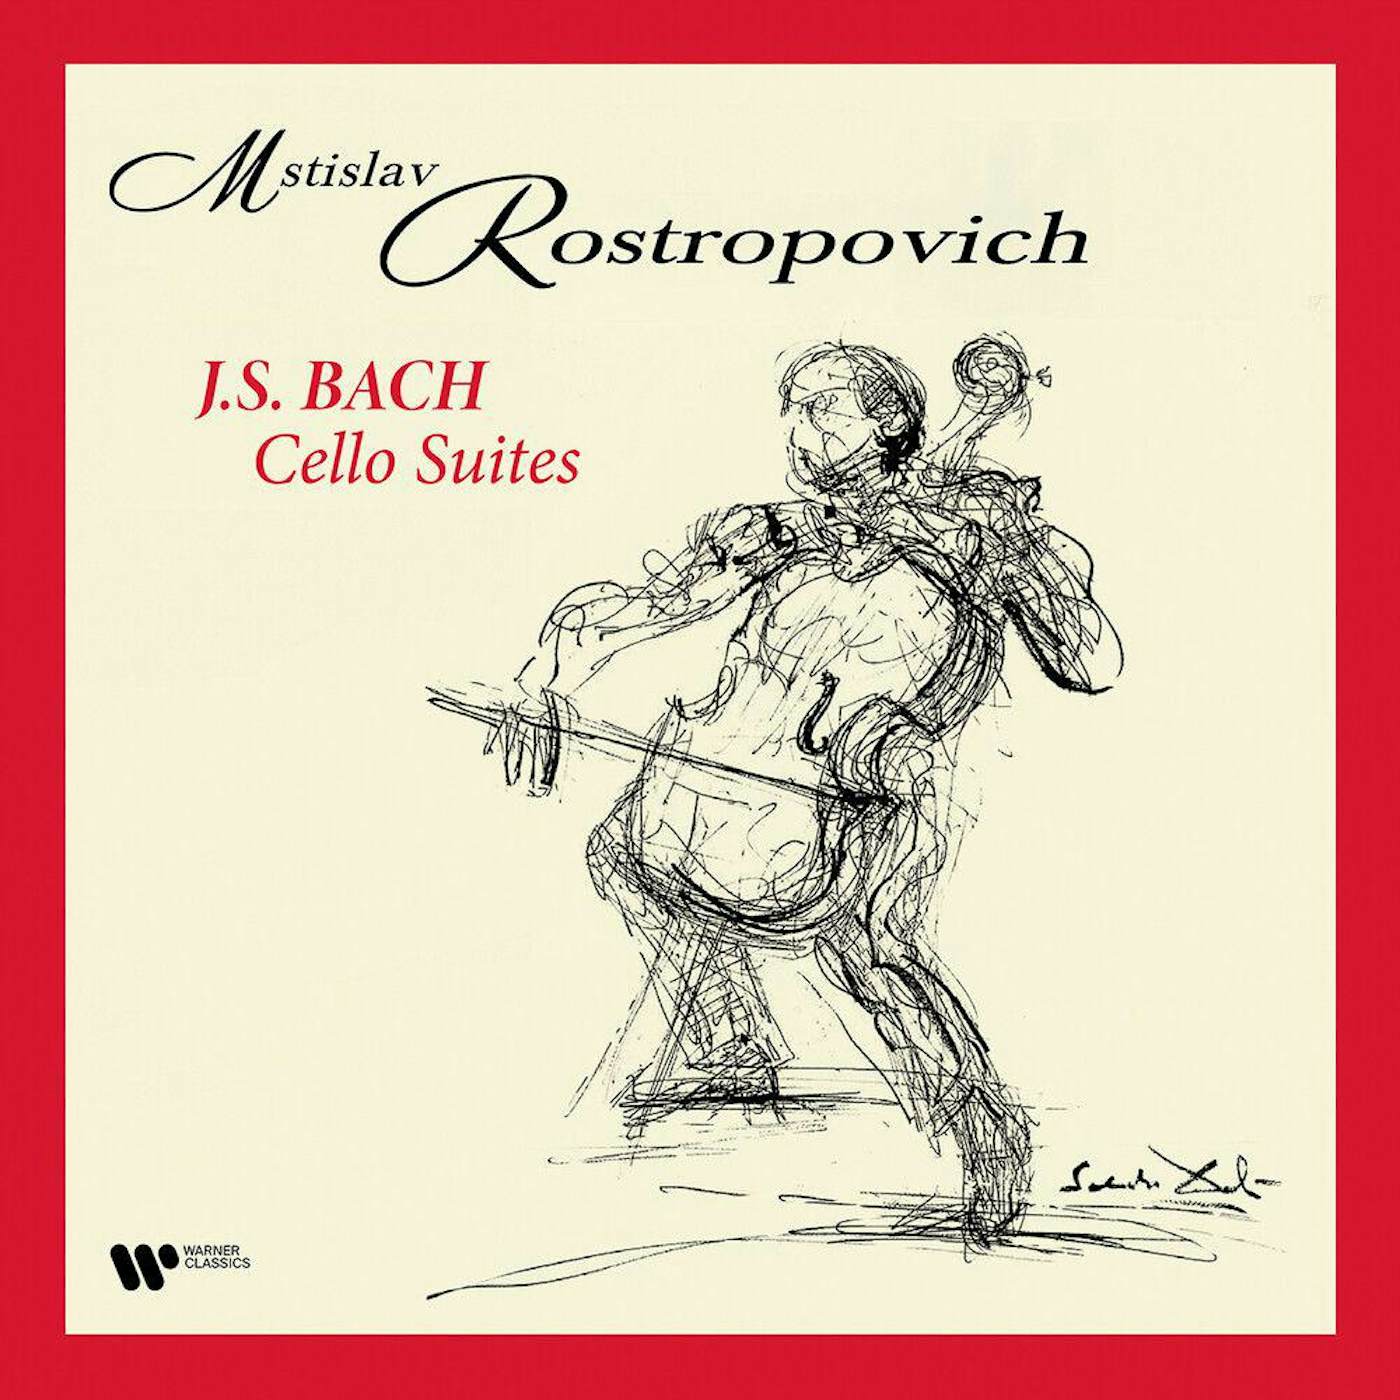 Mstislav Rostropovich Bach: The Cello Suites (4LP/180g) Box Set (Vinyl)